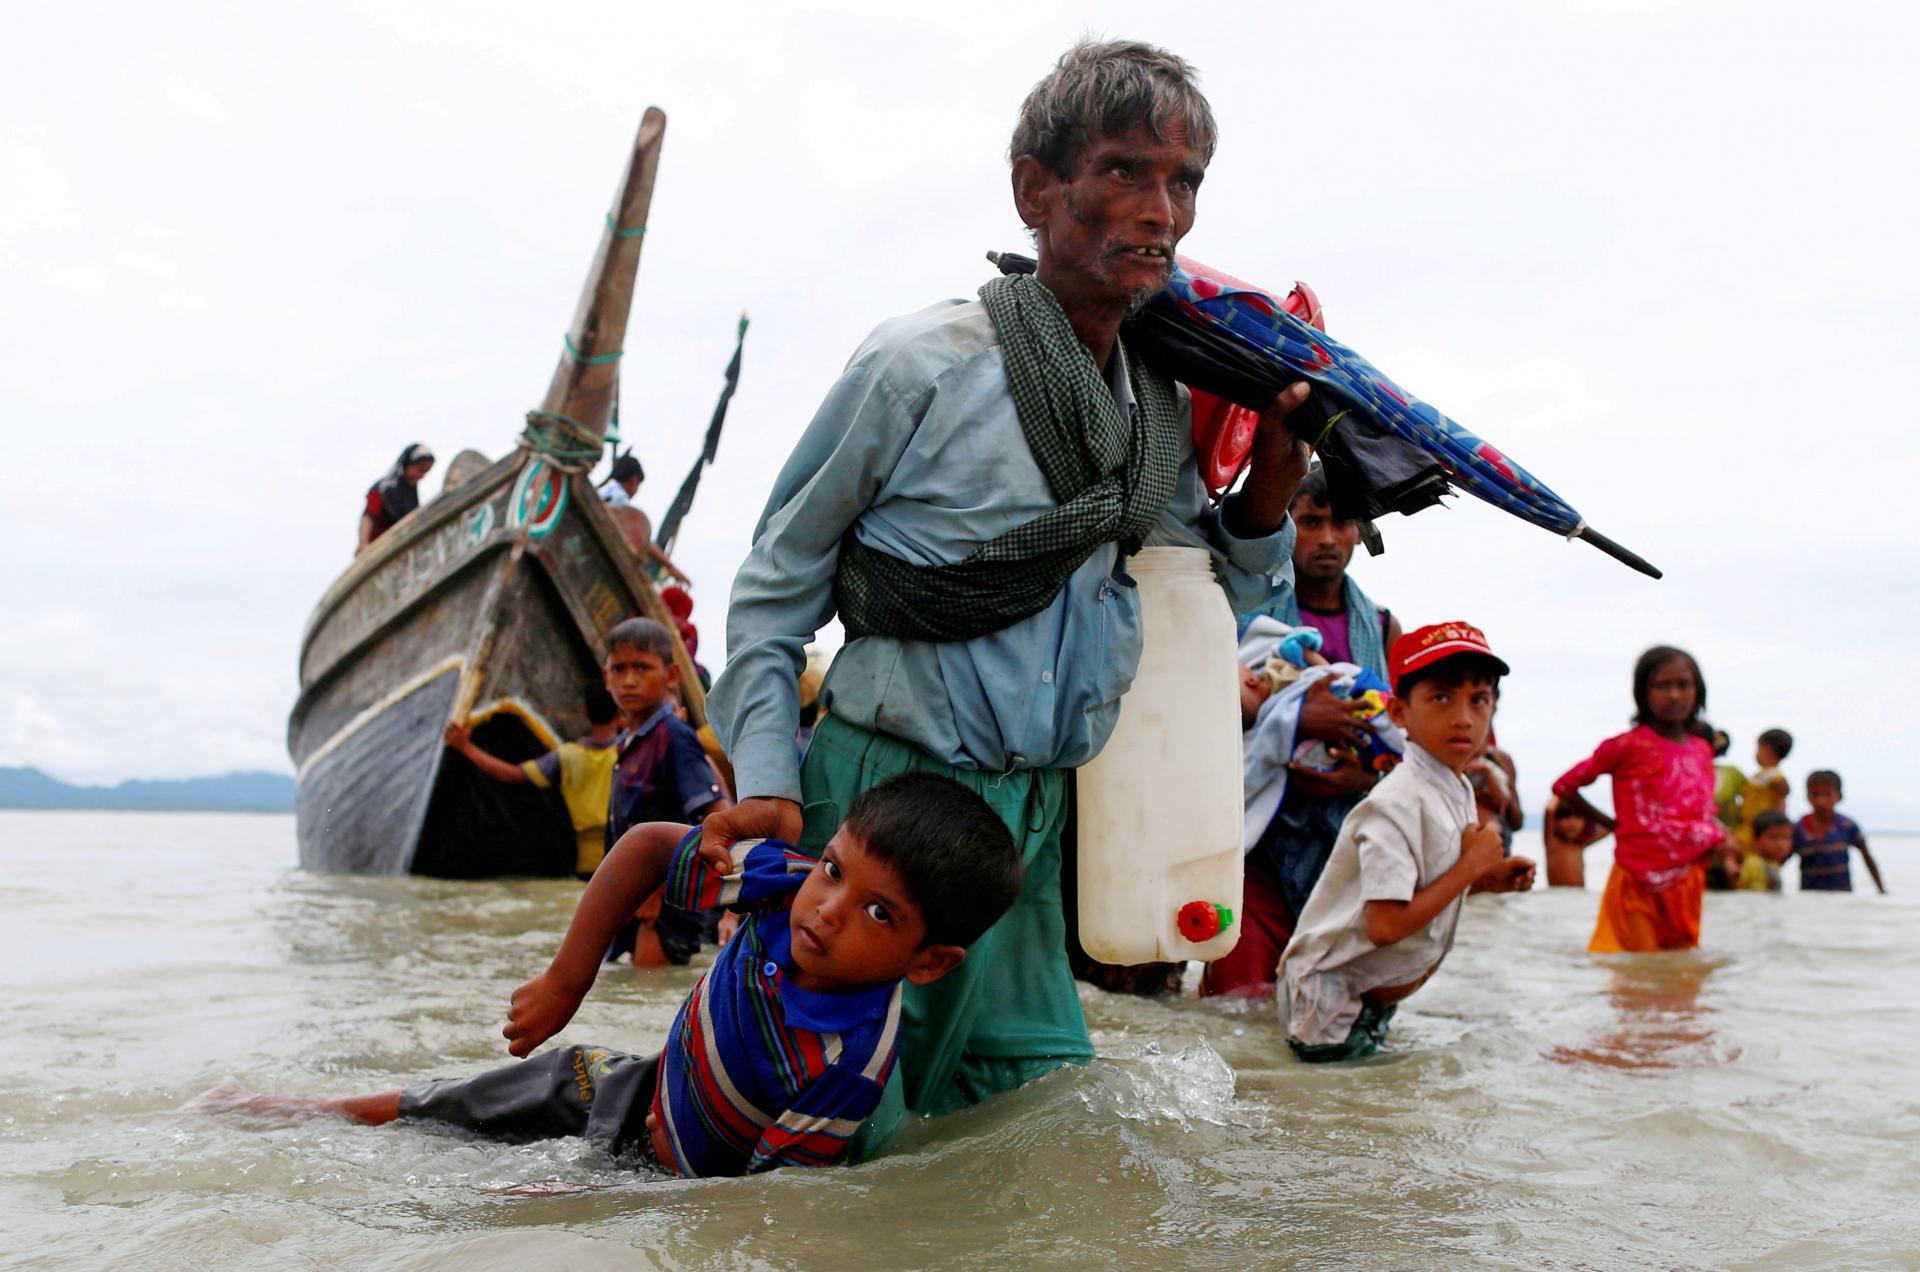 Mjanmarská vláda blokuje pomoc pre Rohingov, po devastujúcom cyklóne dobrovoľníkom nepovolili vstup